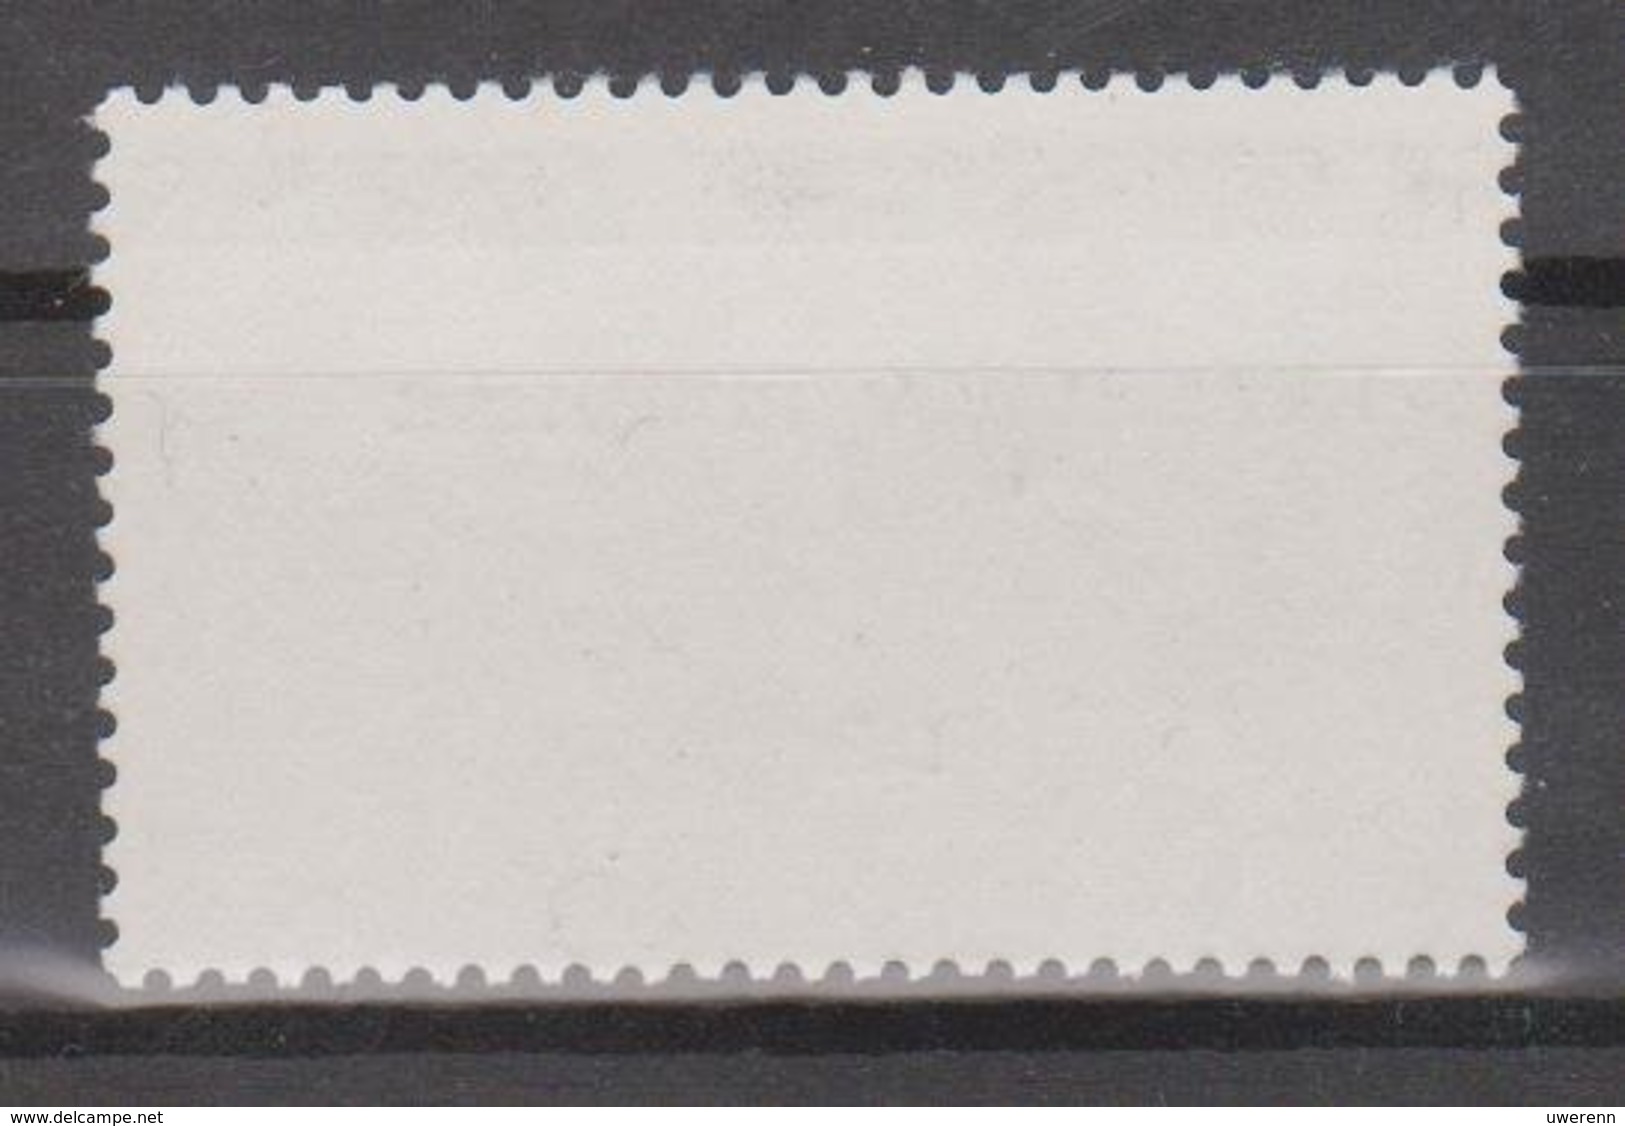 Angola 1980 110 Jahre Briefmarken In Angola: Mi 627 4,50 Kz Postfrisch - Angola